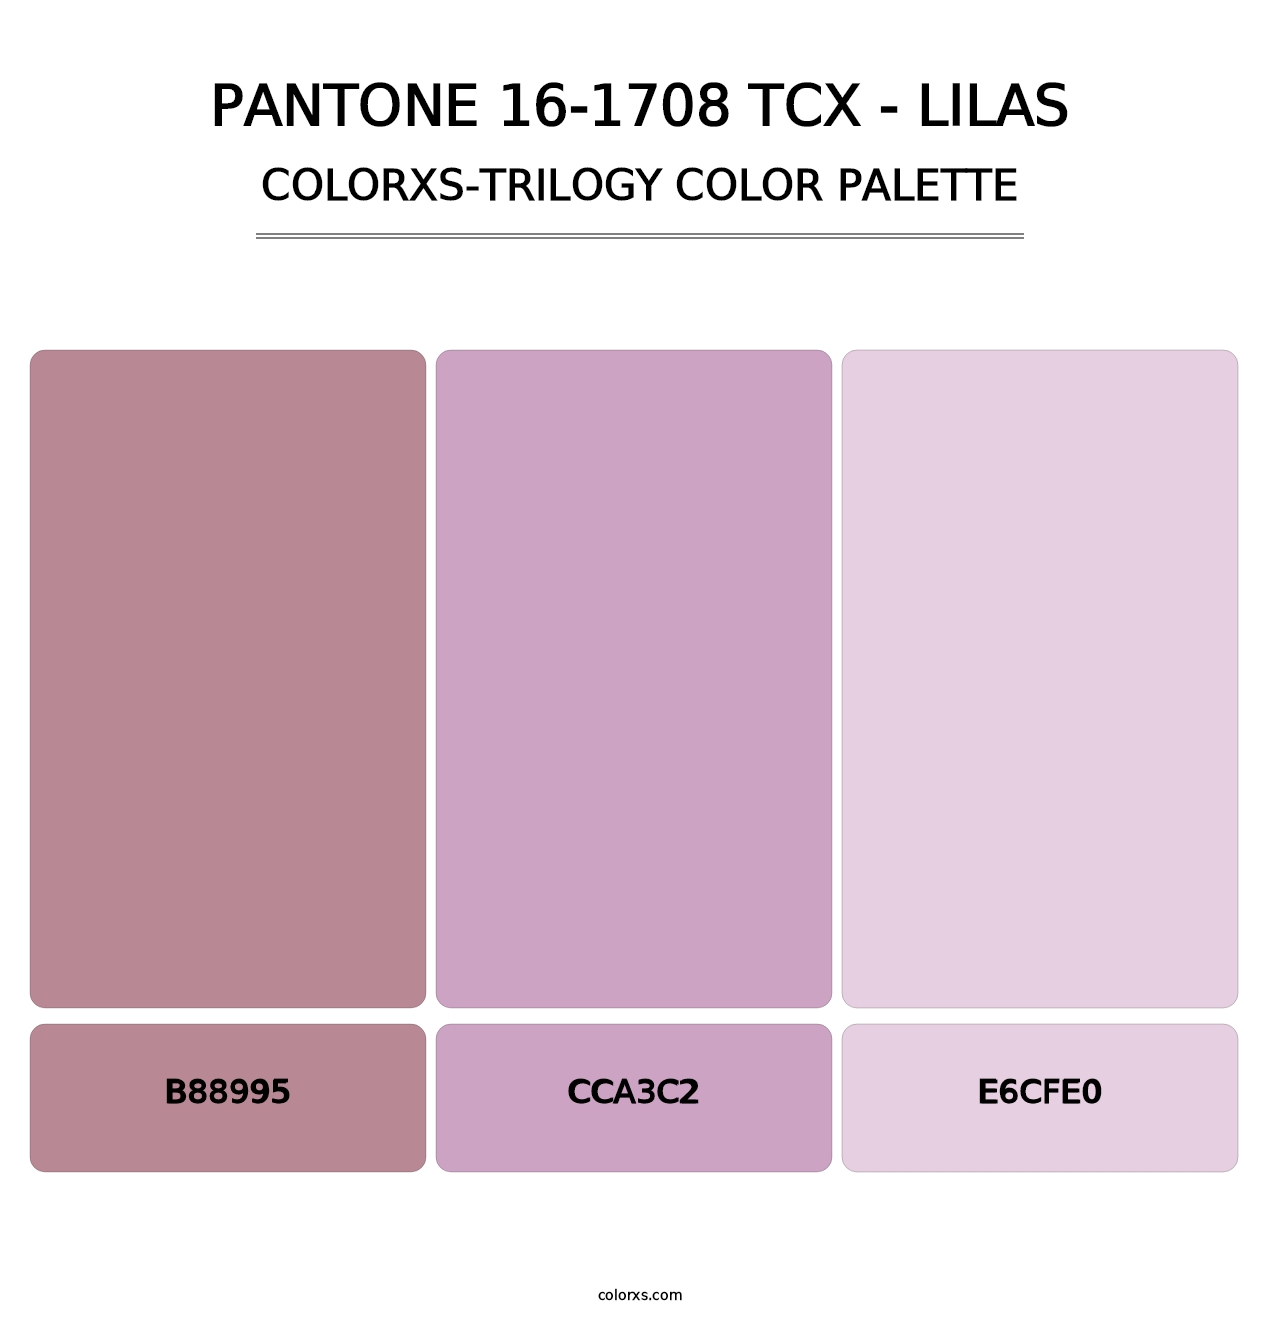 PANTONE 16-1708 TCX - Lilas - Colorxs Trilogy Palette